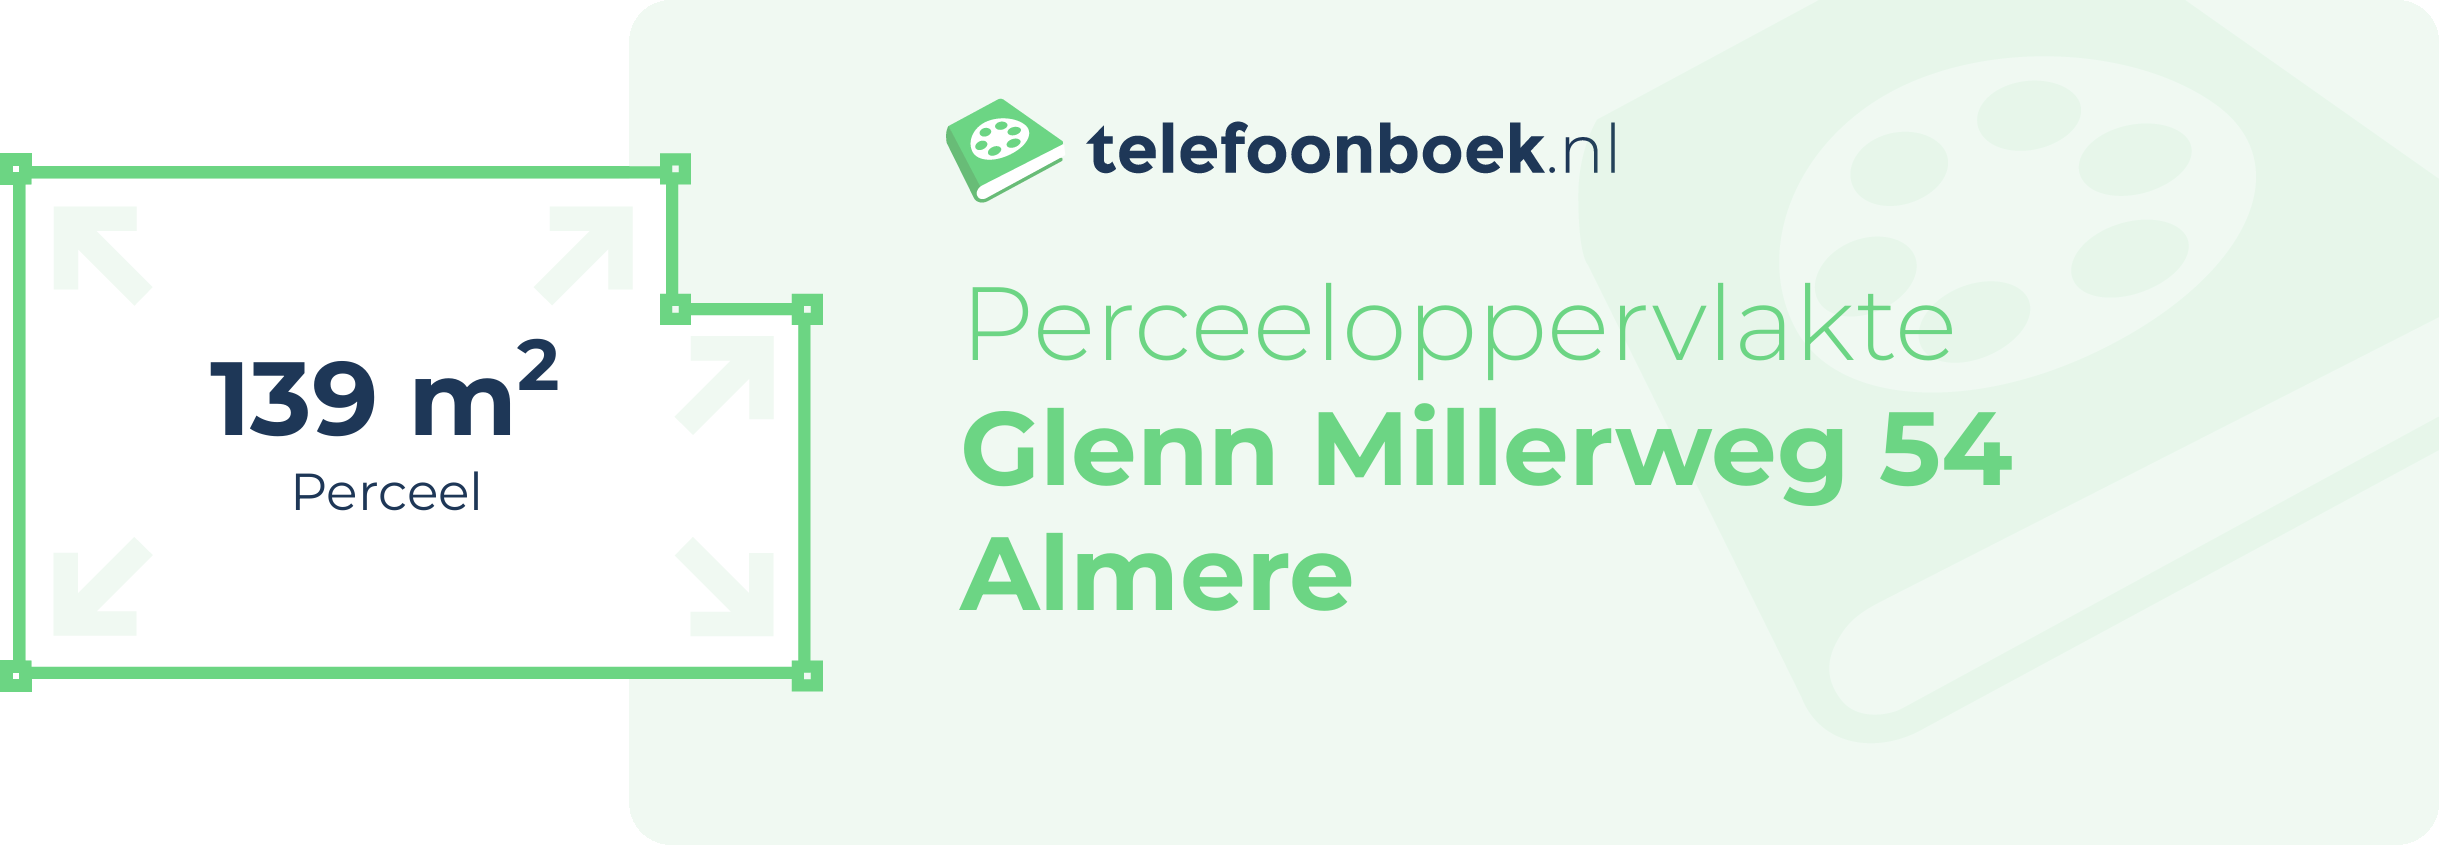 Perceeloppervlakte Glenn Millerweg 54 Almere